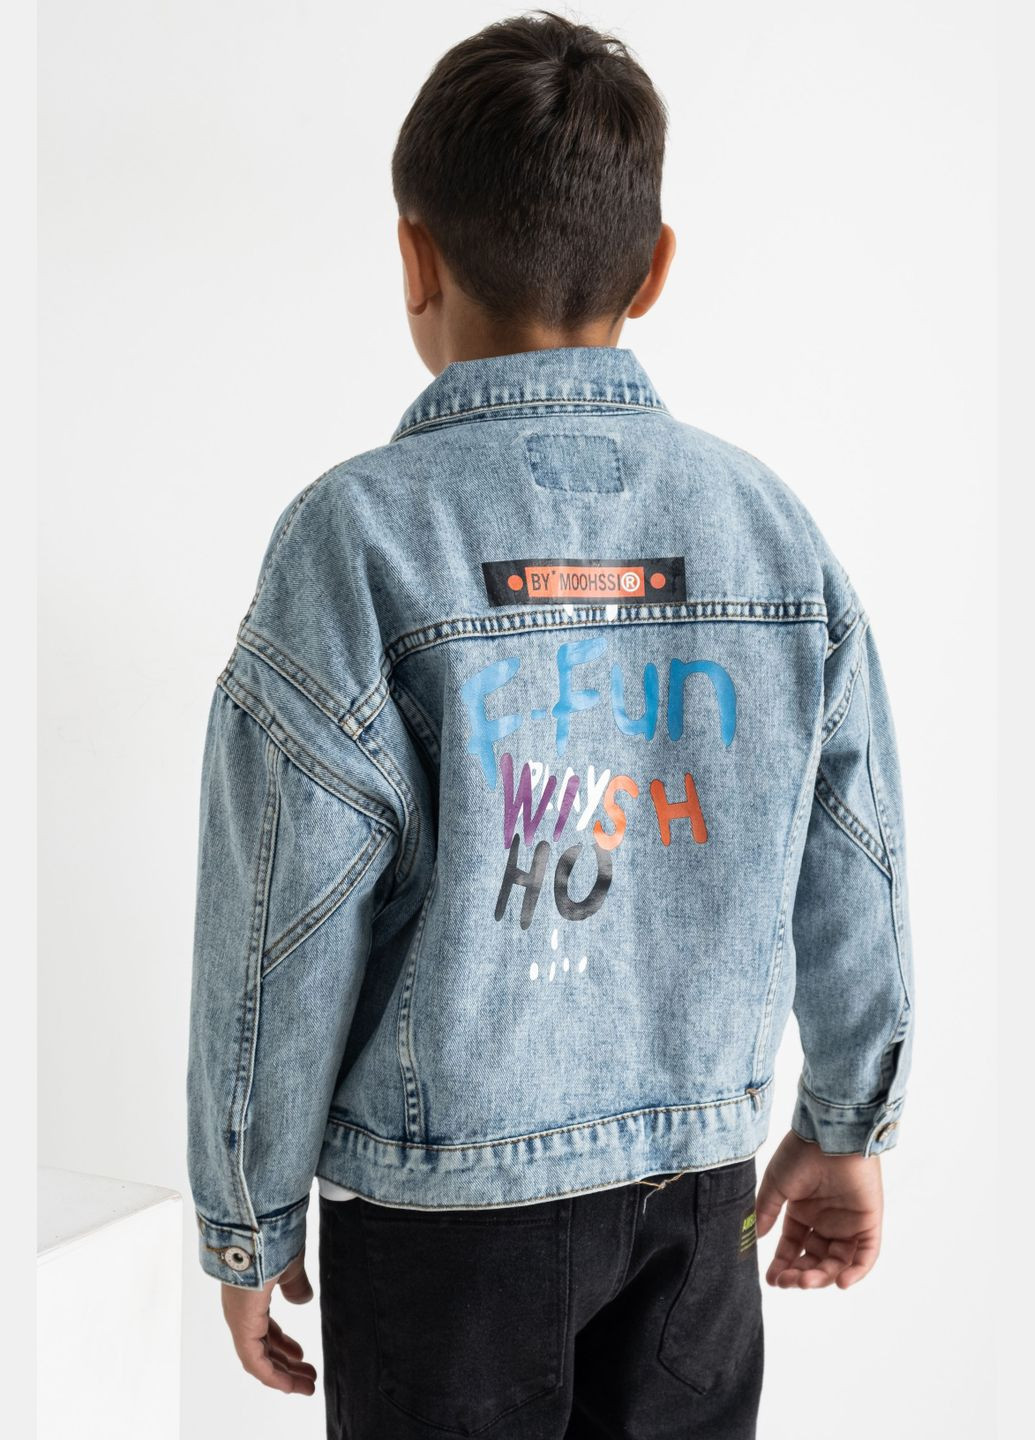 Піджак дитячий для дівчинки джинсовий блакитного кольору Let's Shop (292251728)